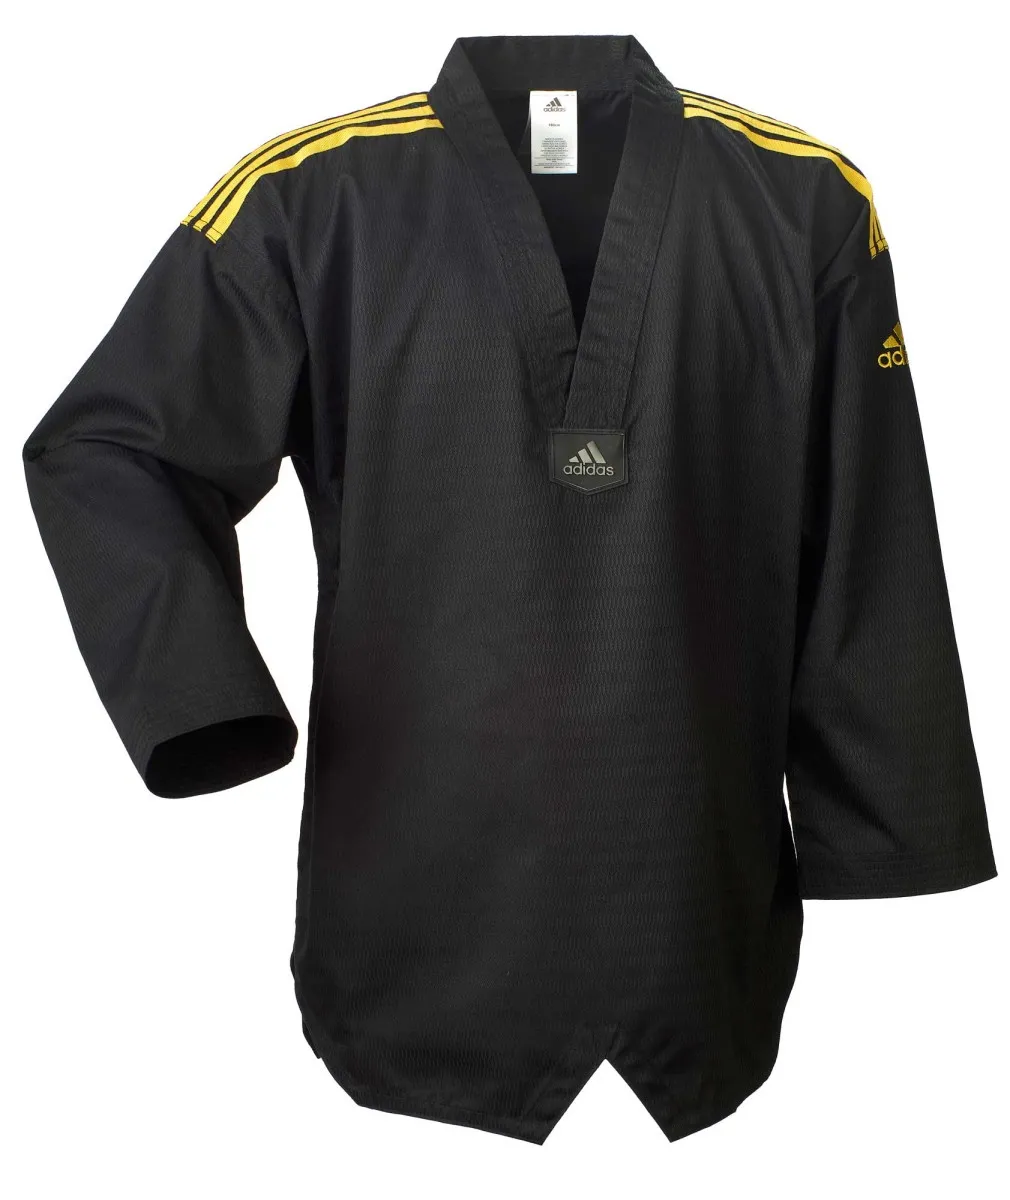 adidas Combinaison de Taekwondo adi champion noir, bandes dorées sur les épaules